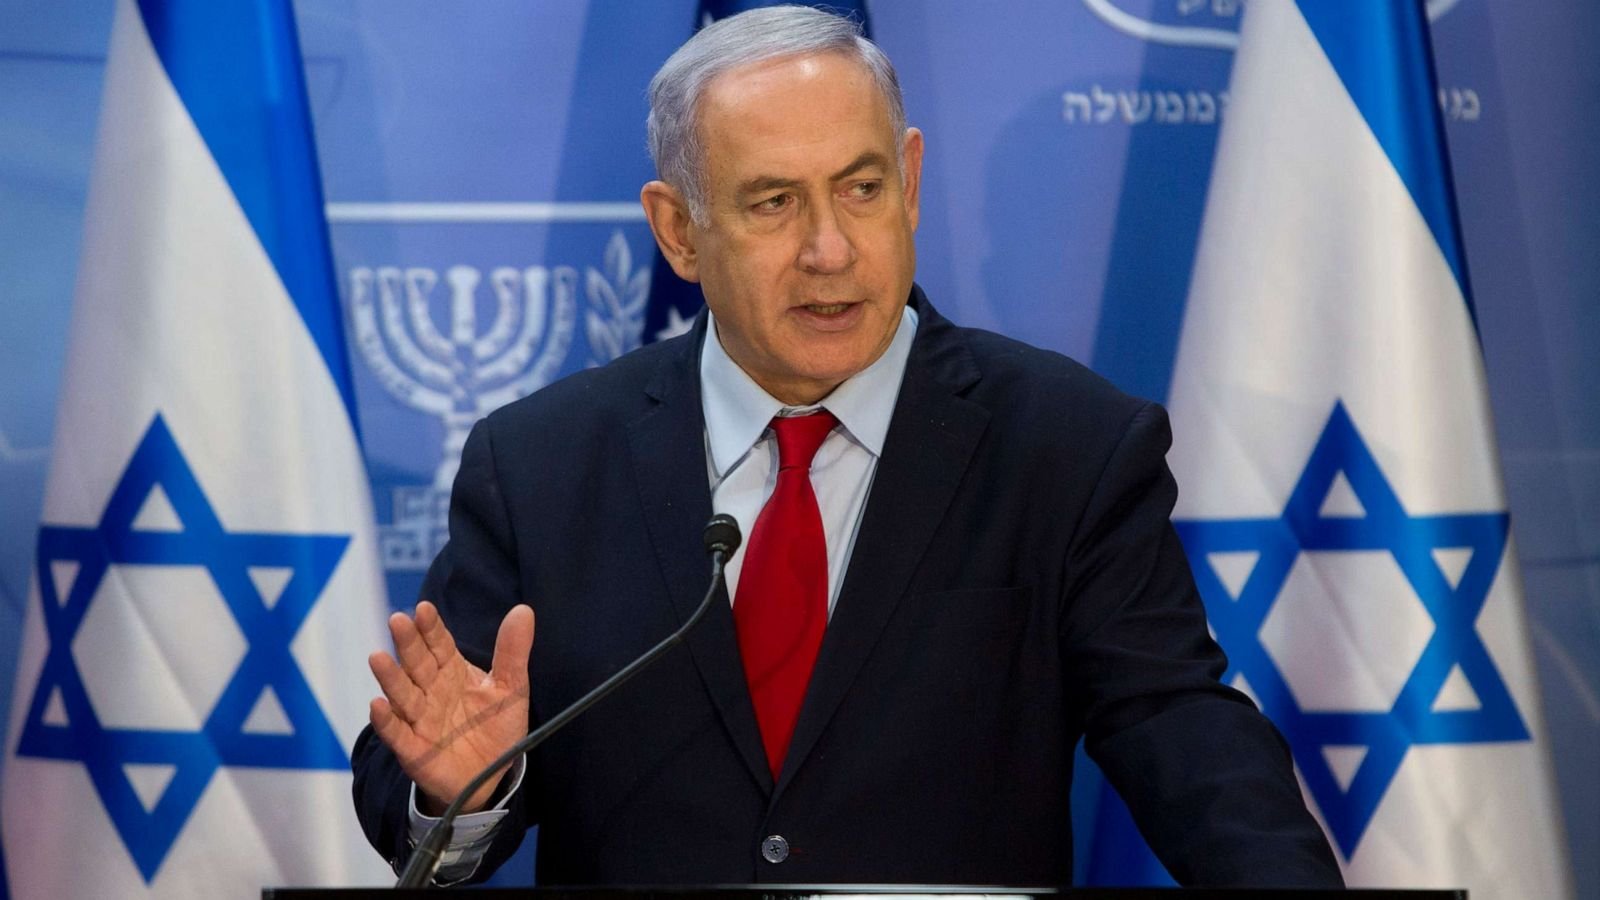  Procesul cu privire la corupţie al premierului Netanyahu se reia după alegerile legislative